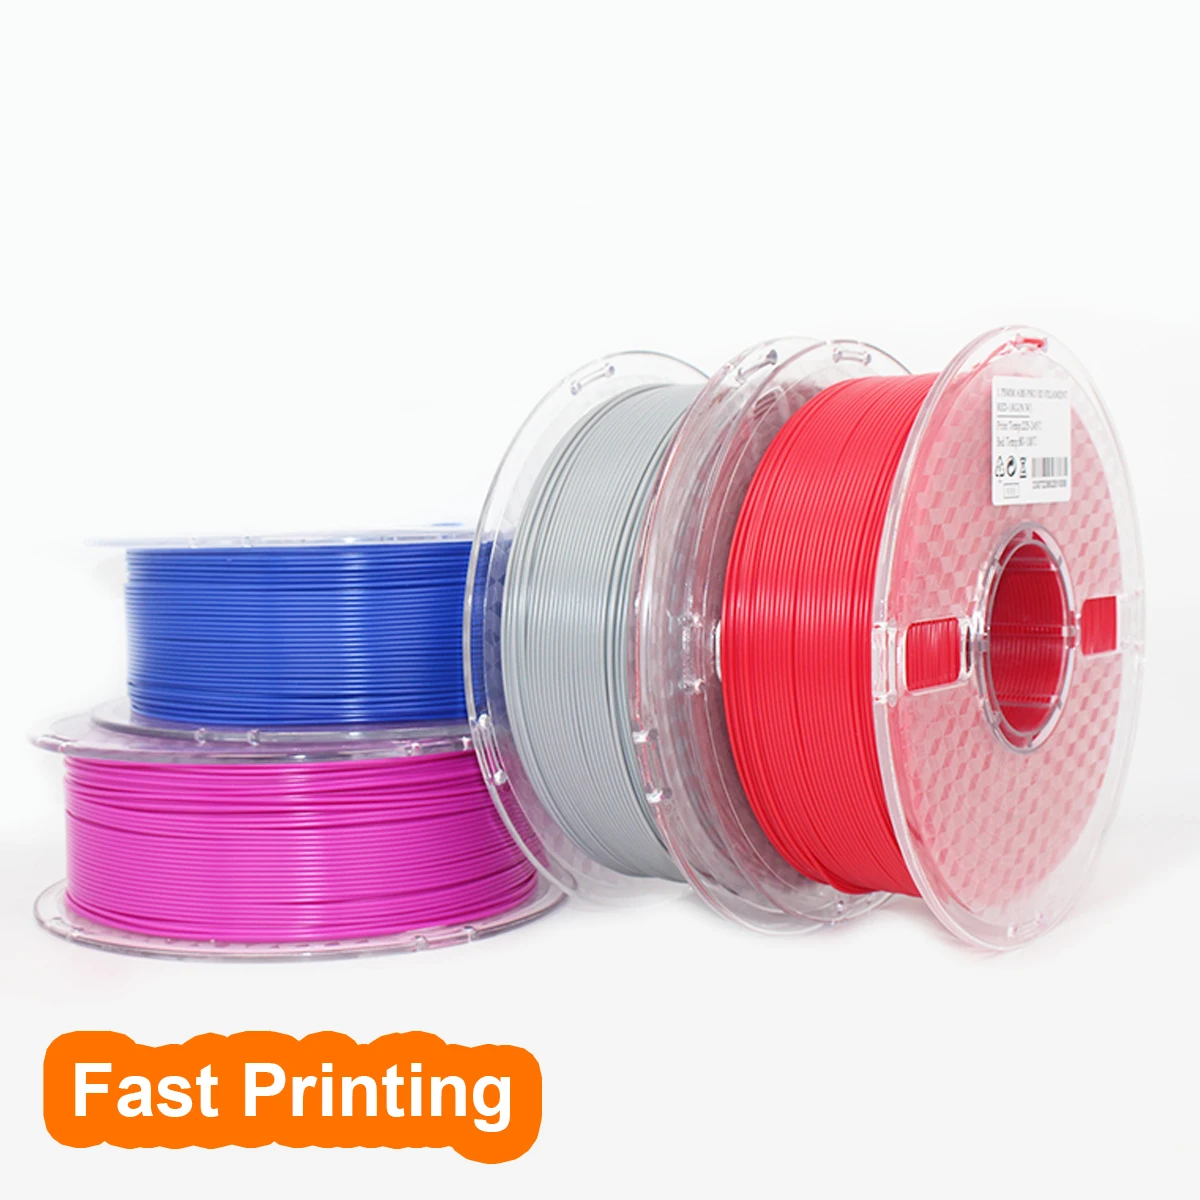 

OEM/ODM sting3d matte pla 1.75mm 1kg ABS PETG PLA PLUS 3d printer filament 175mm pla filament 3d filamento 1.75mm